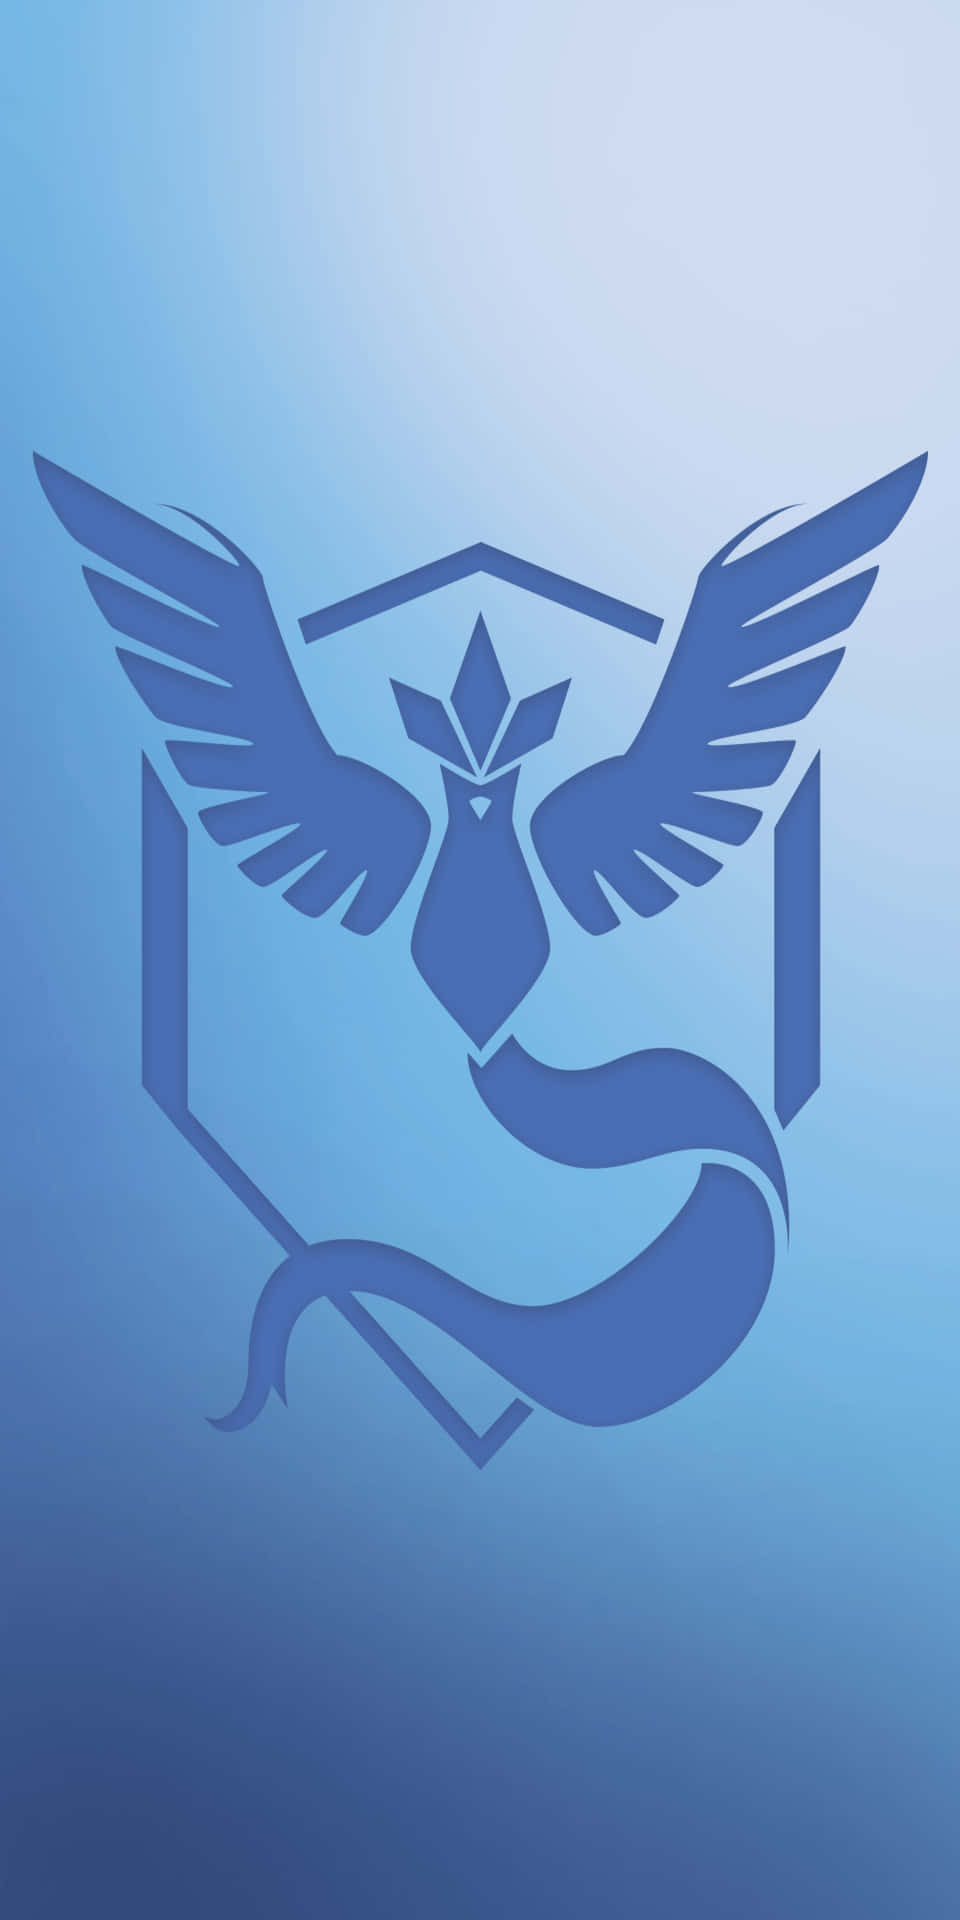 Pixel3 Minimalistischer Hintergrund Mit Blauem Vogel-emblem